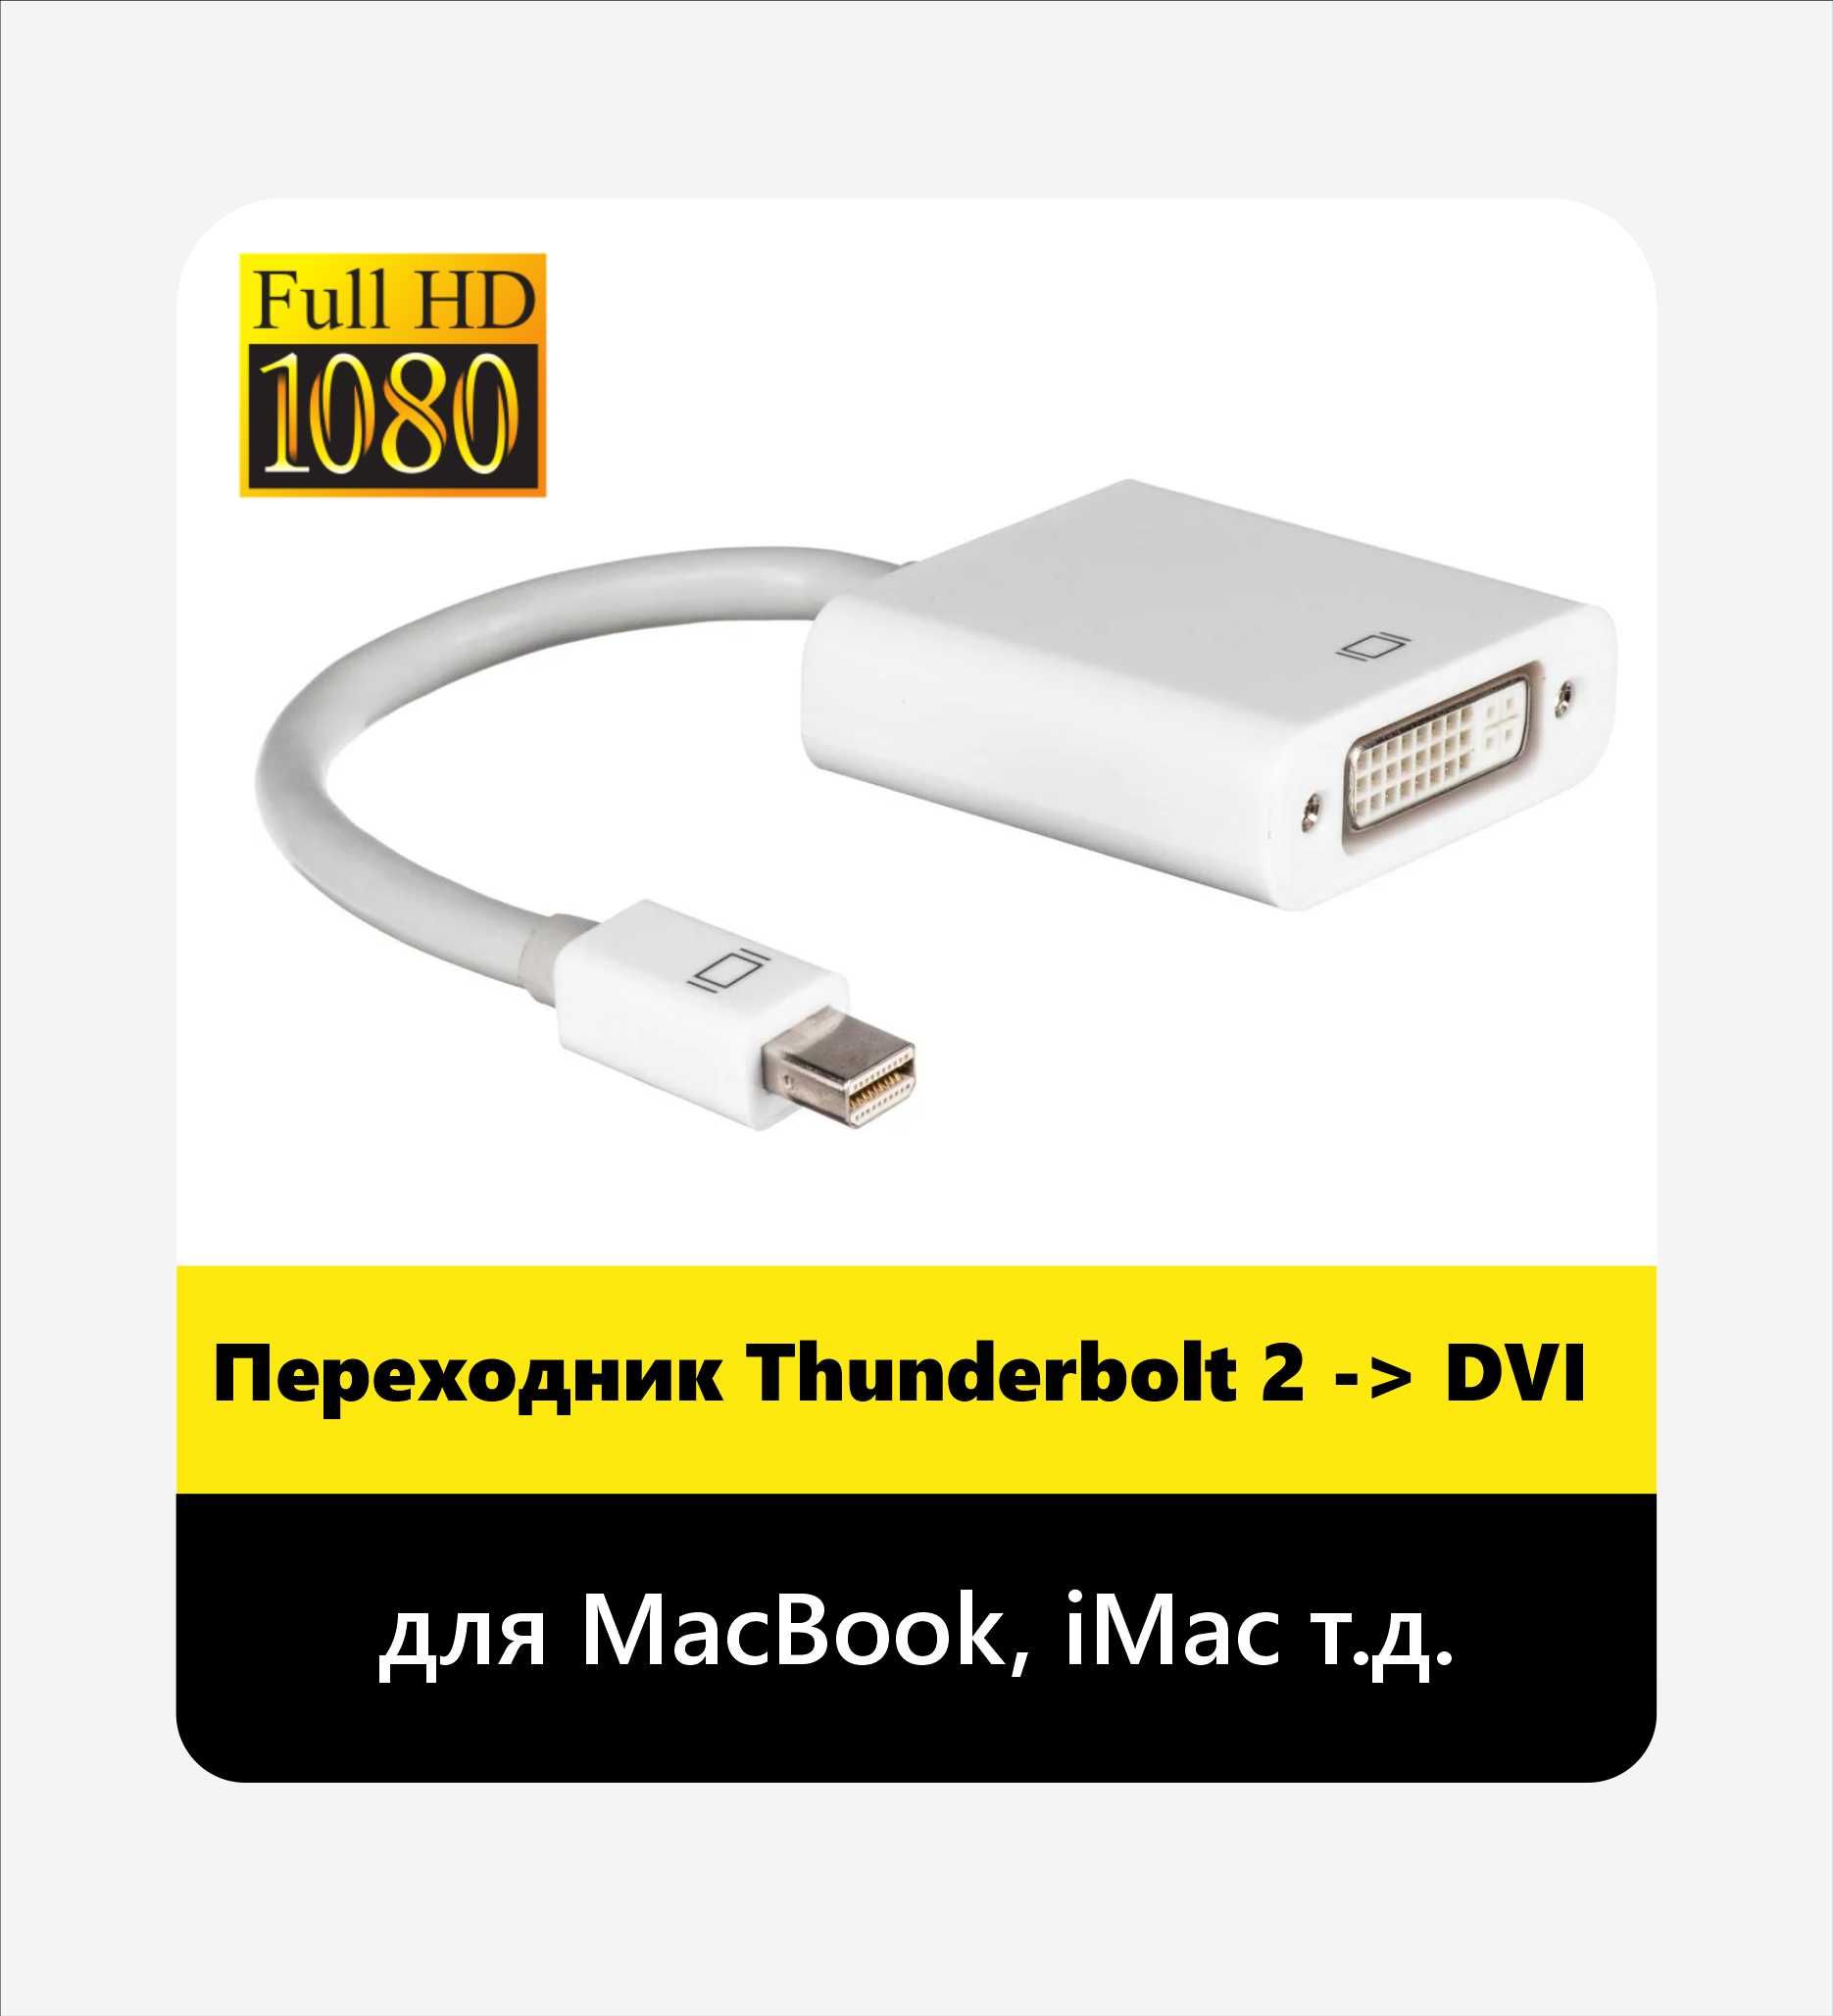 2000тг - Мультимедийный Thunderbolt 2 -> DVI (для MacBook, iMac т.д.)